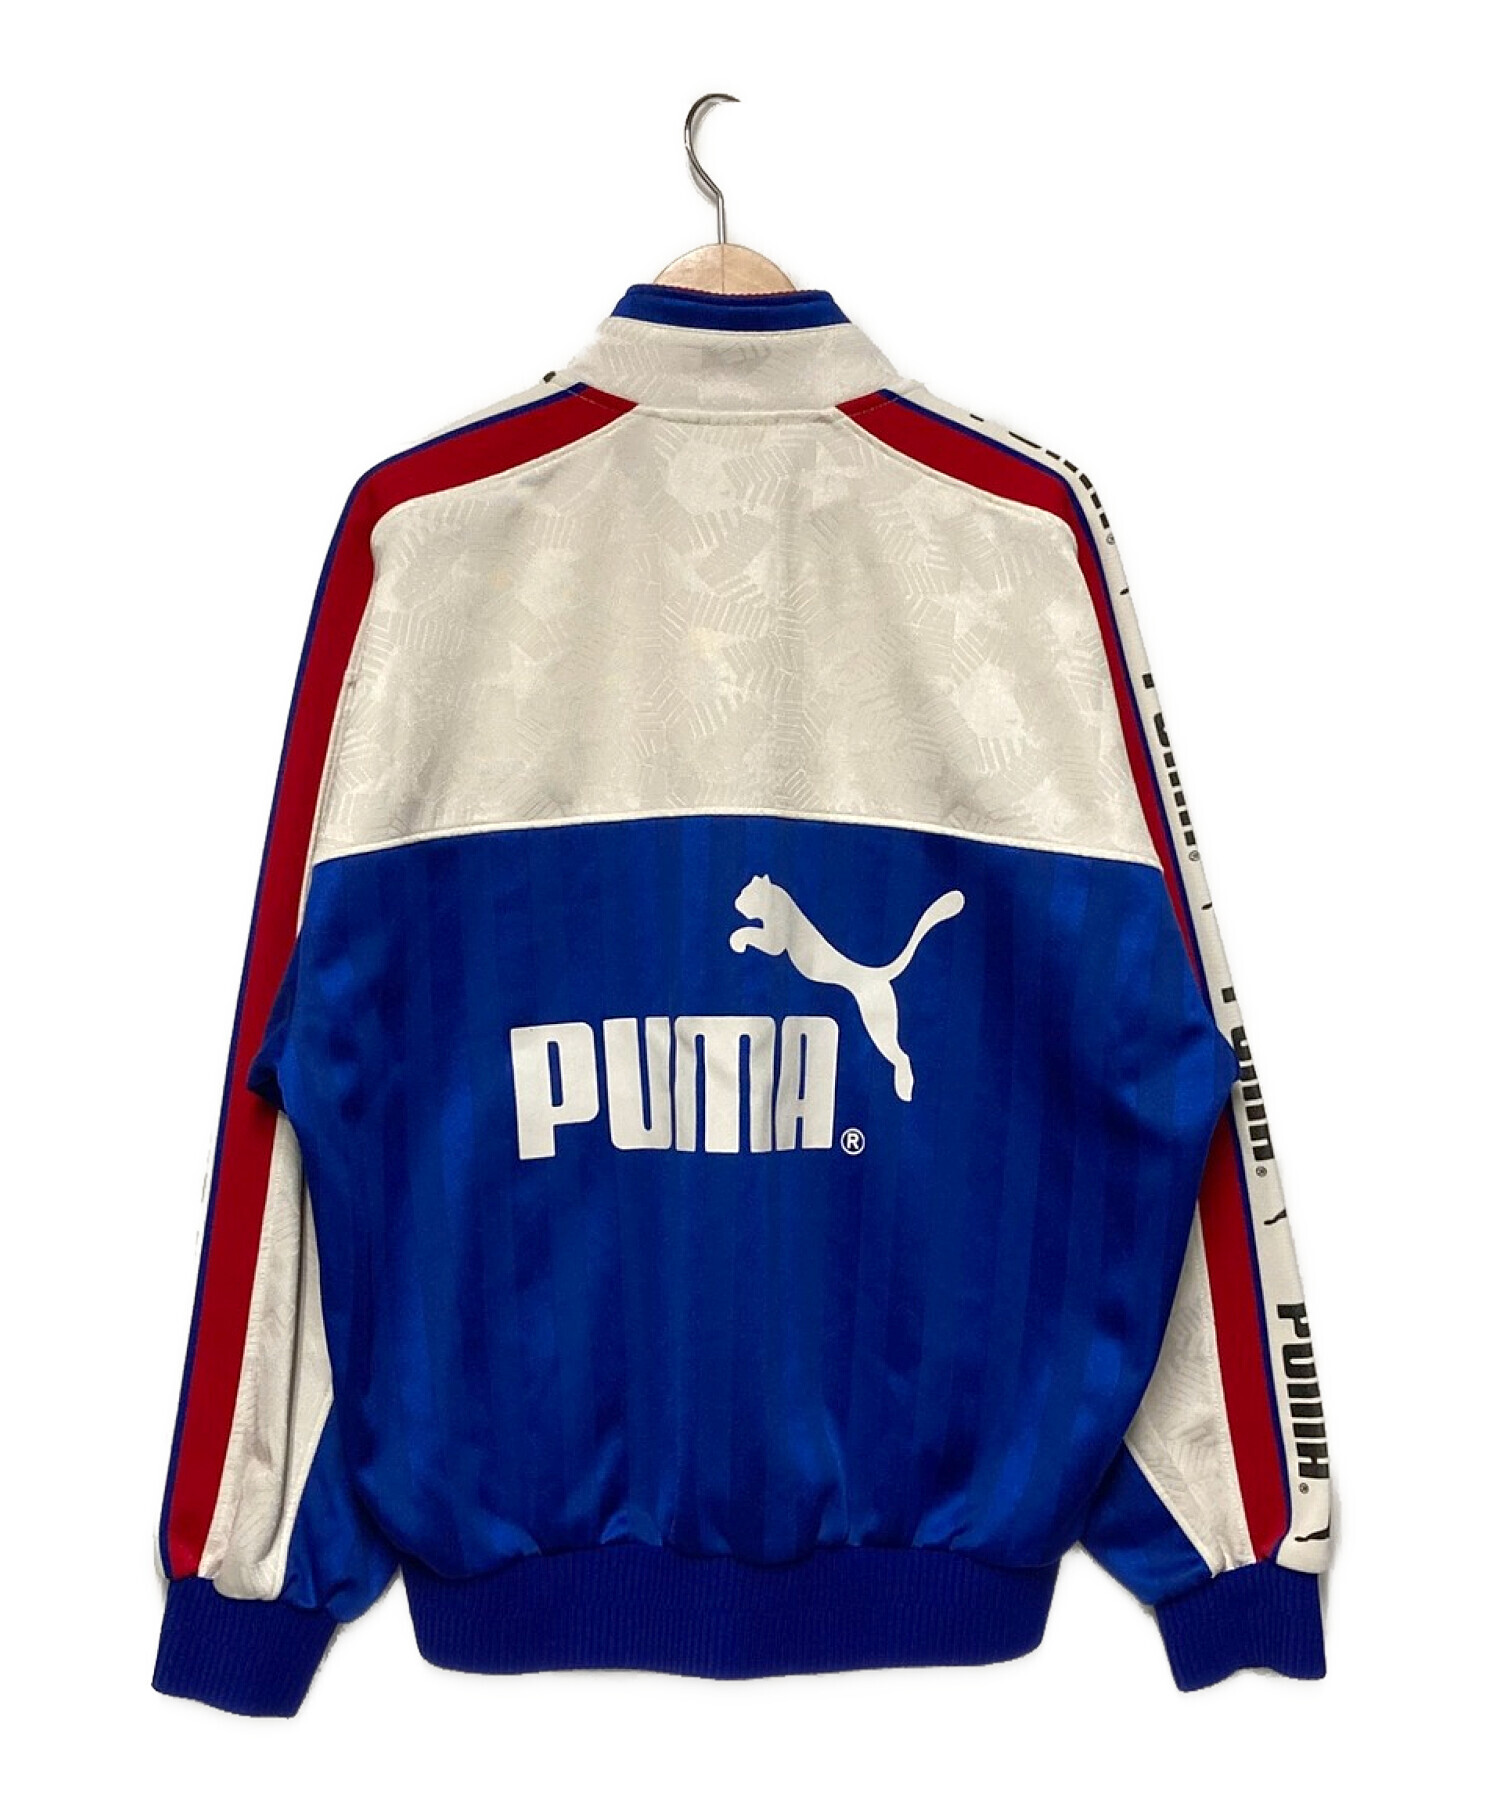 PUMA (プーマ) 90's JFAジャージセットアップ ホワイト×ブルー サイズ:L